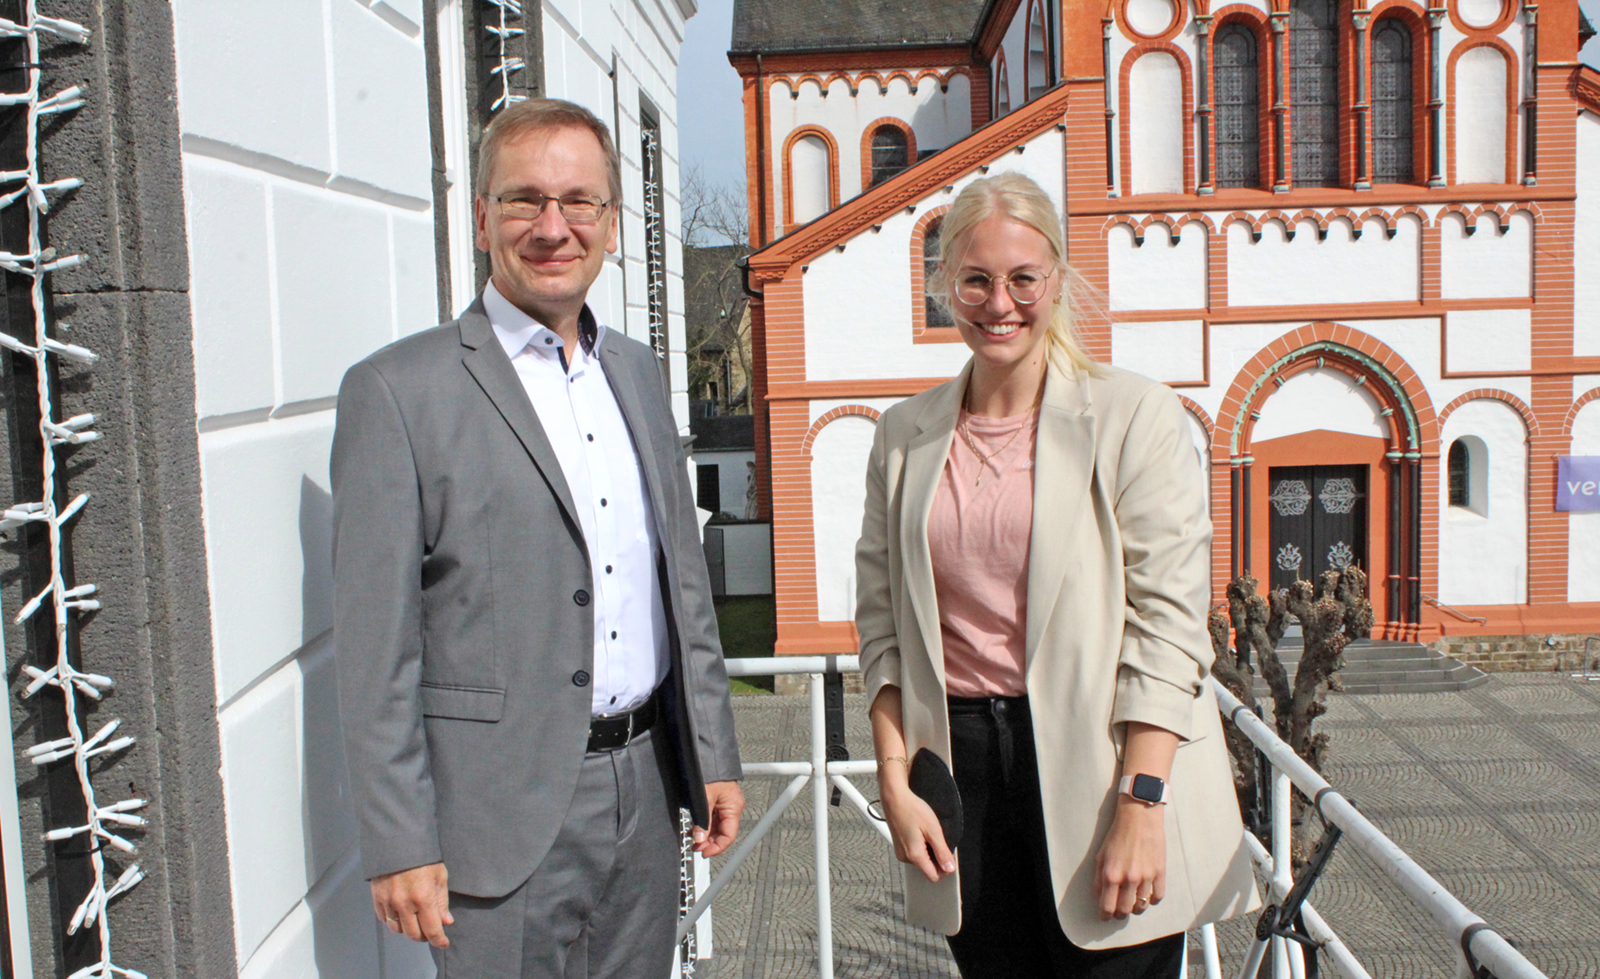 Bürgermeister Andreas Geron mit der neuen Fachbereichsleiterin Vivian Matha (v.l.). Foto: Stadtverwaltung Sinzig